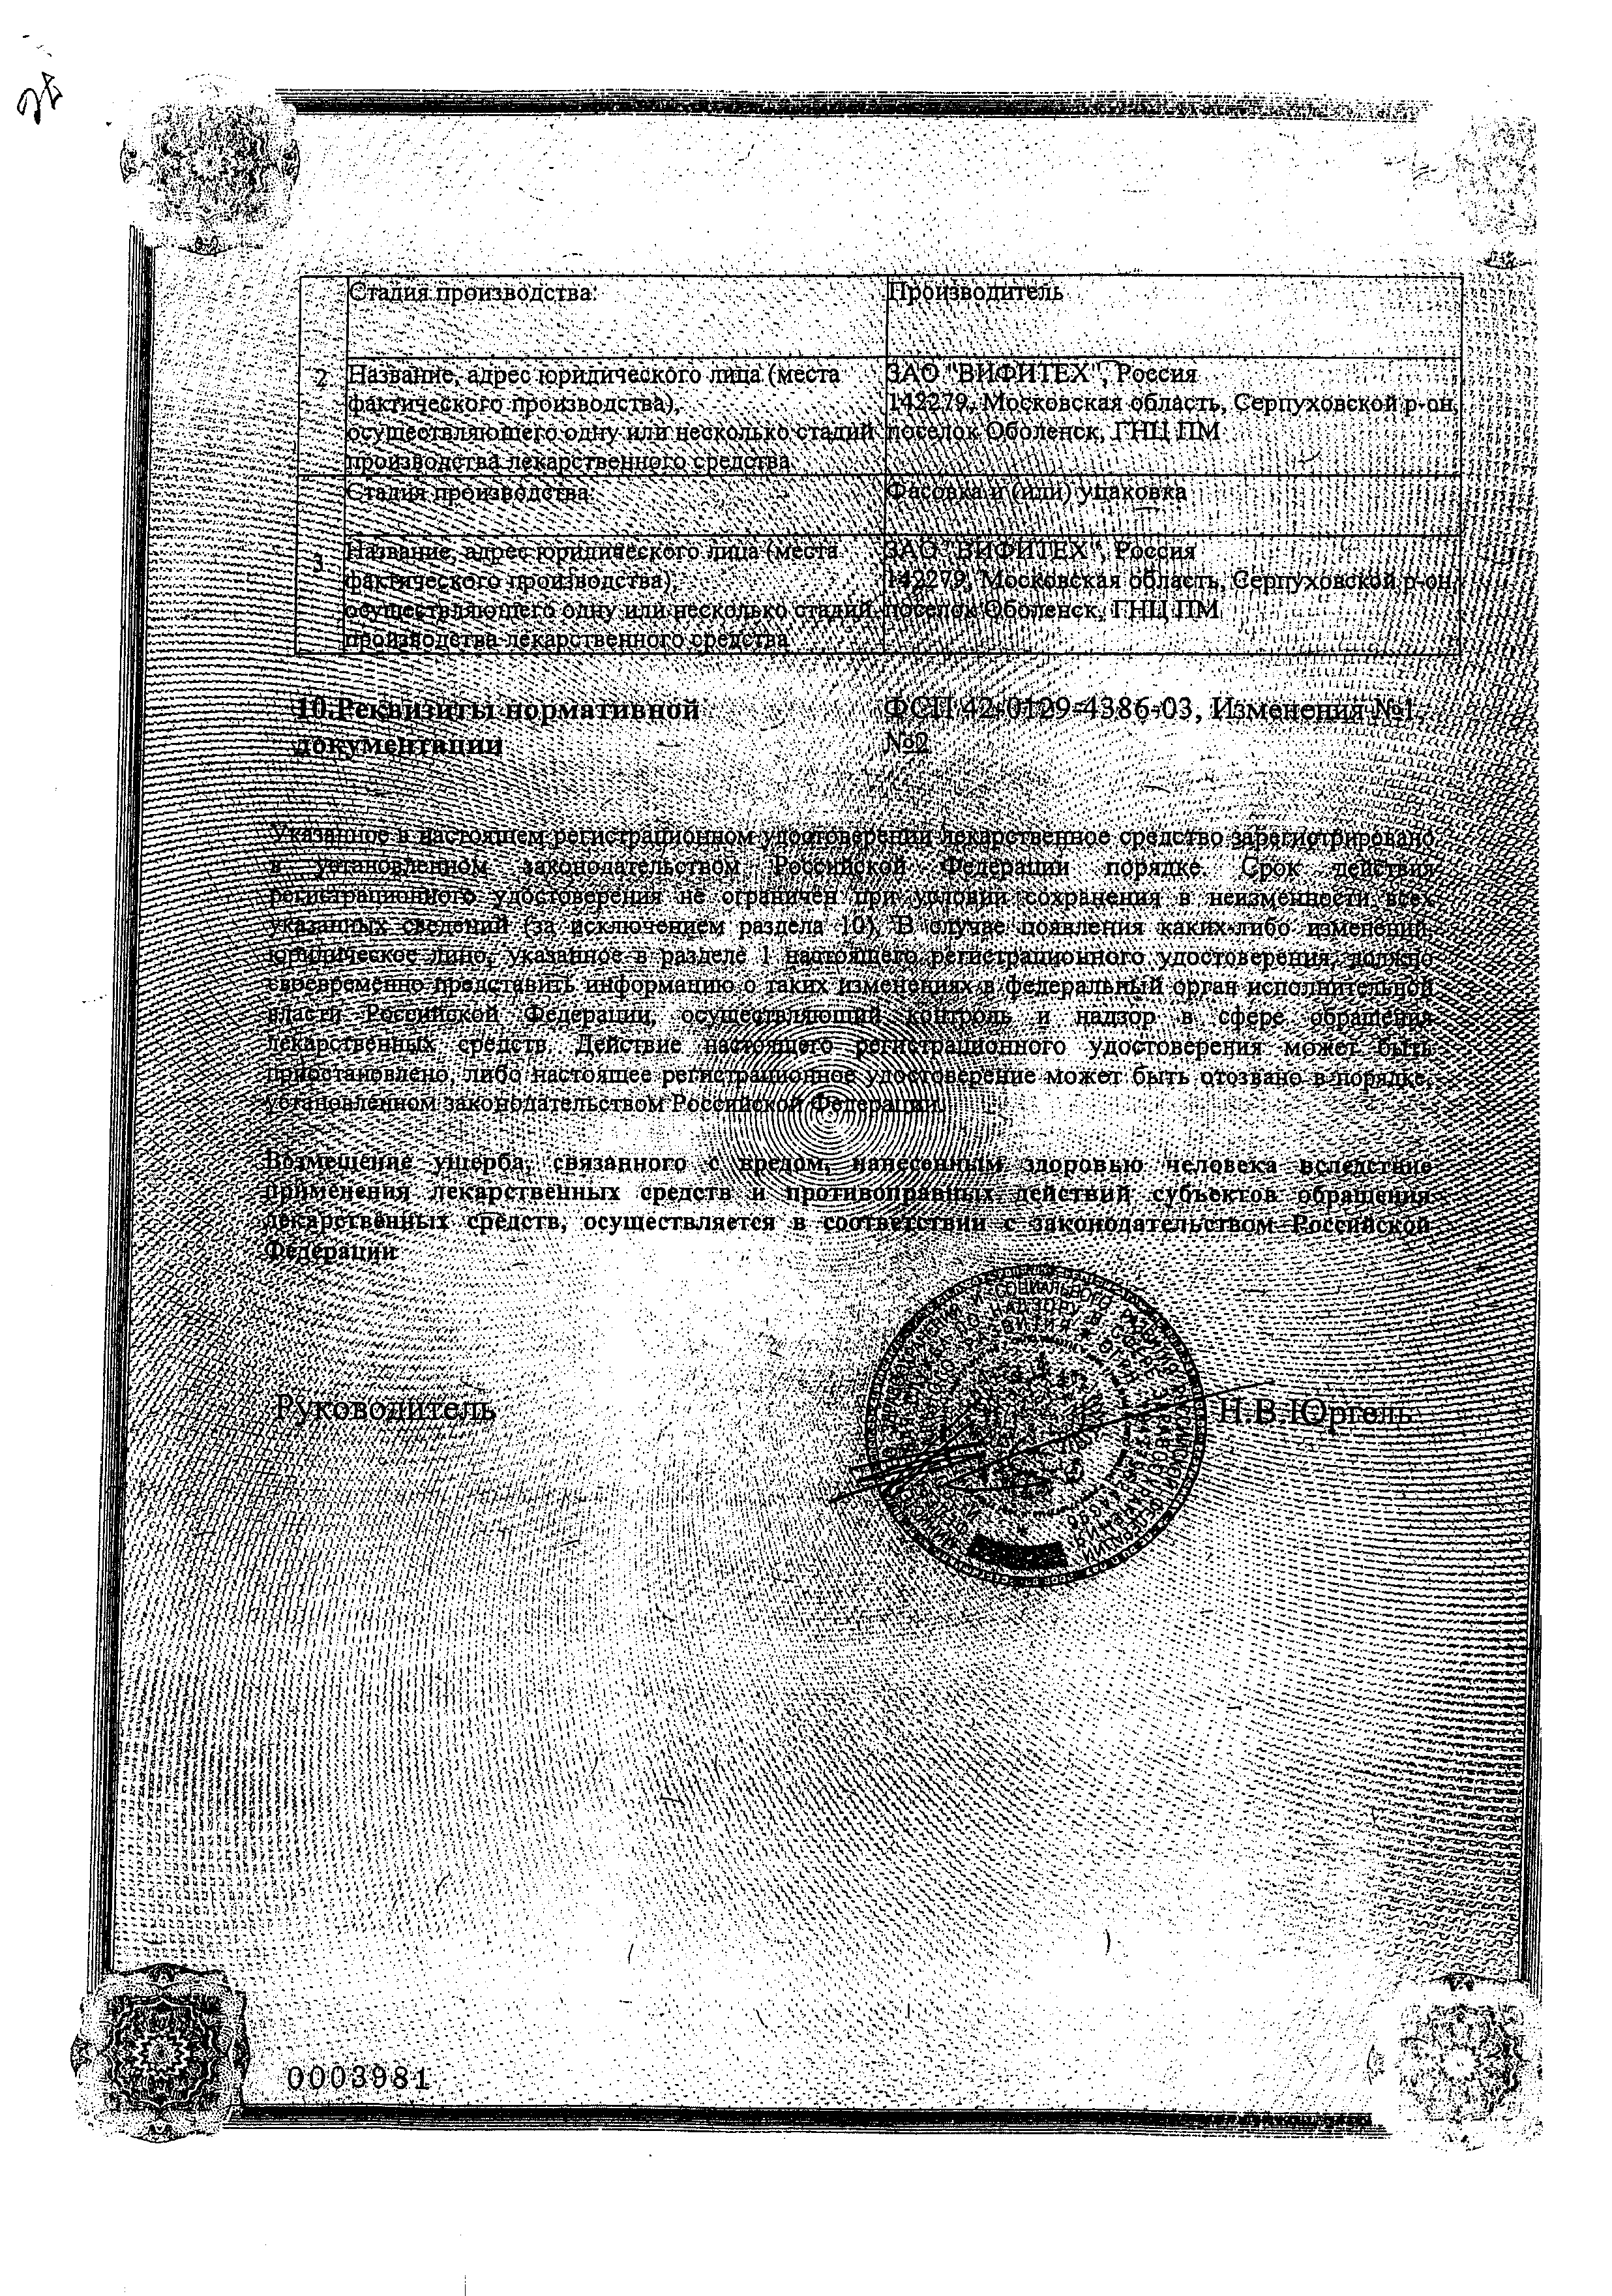 Алтея сироп сертификат